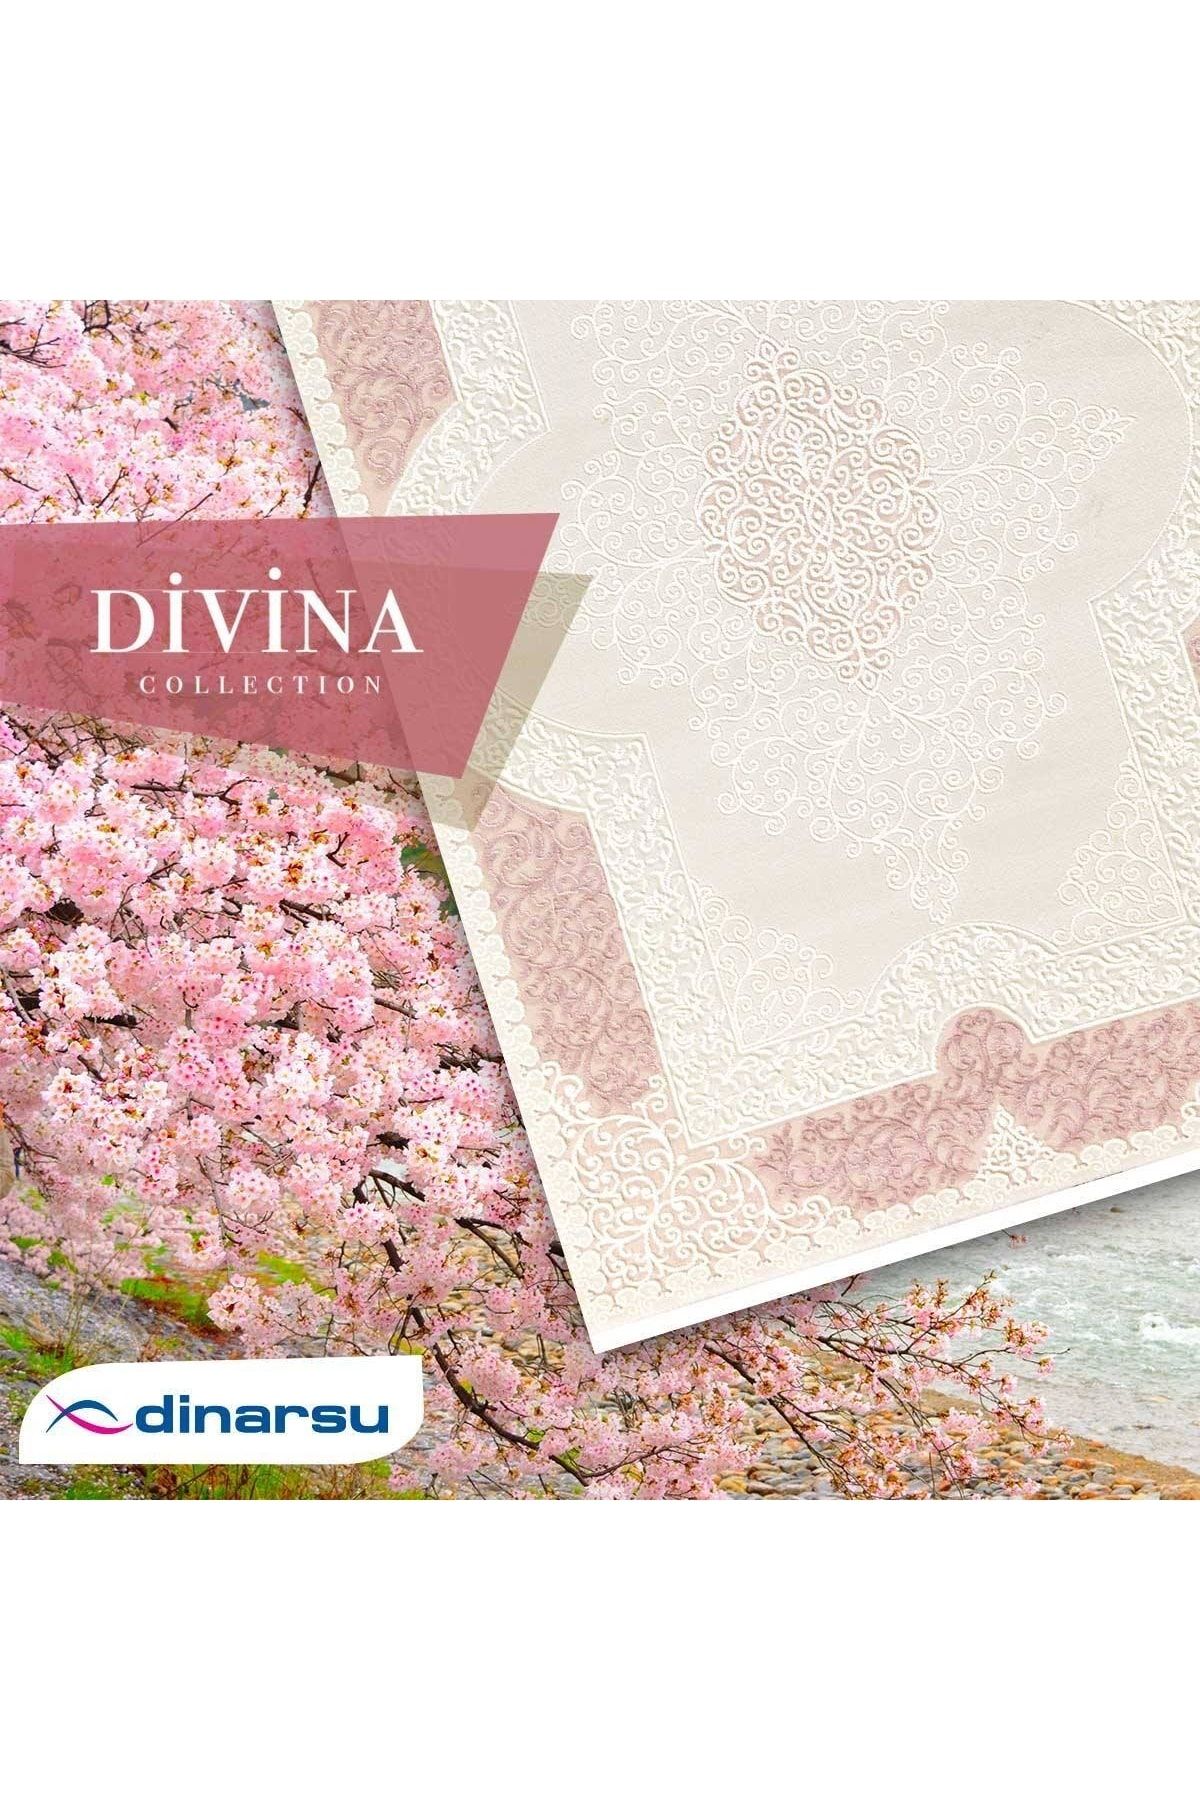 Dinarsu Halı Divina Koleksiyonu Dı024-065 080x300